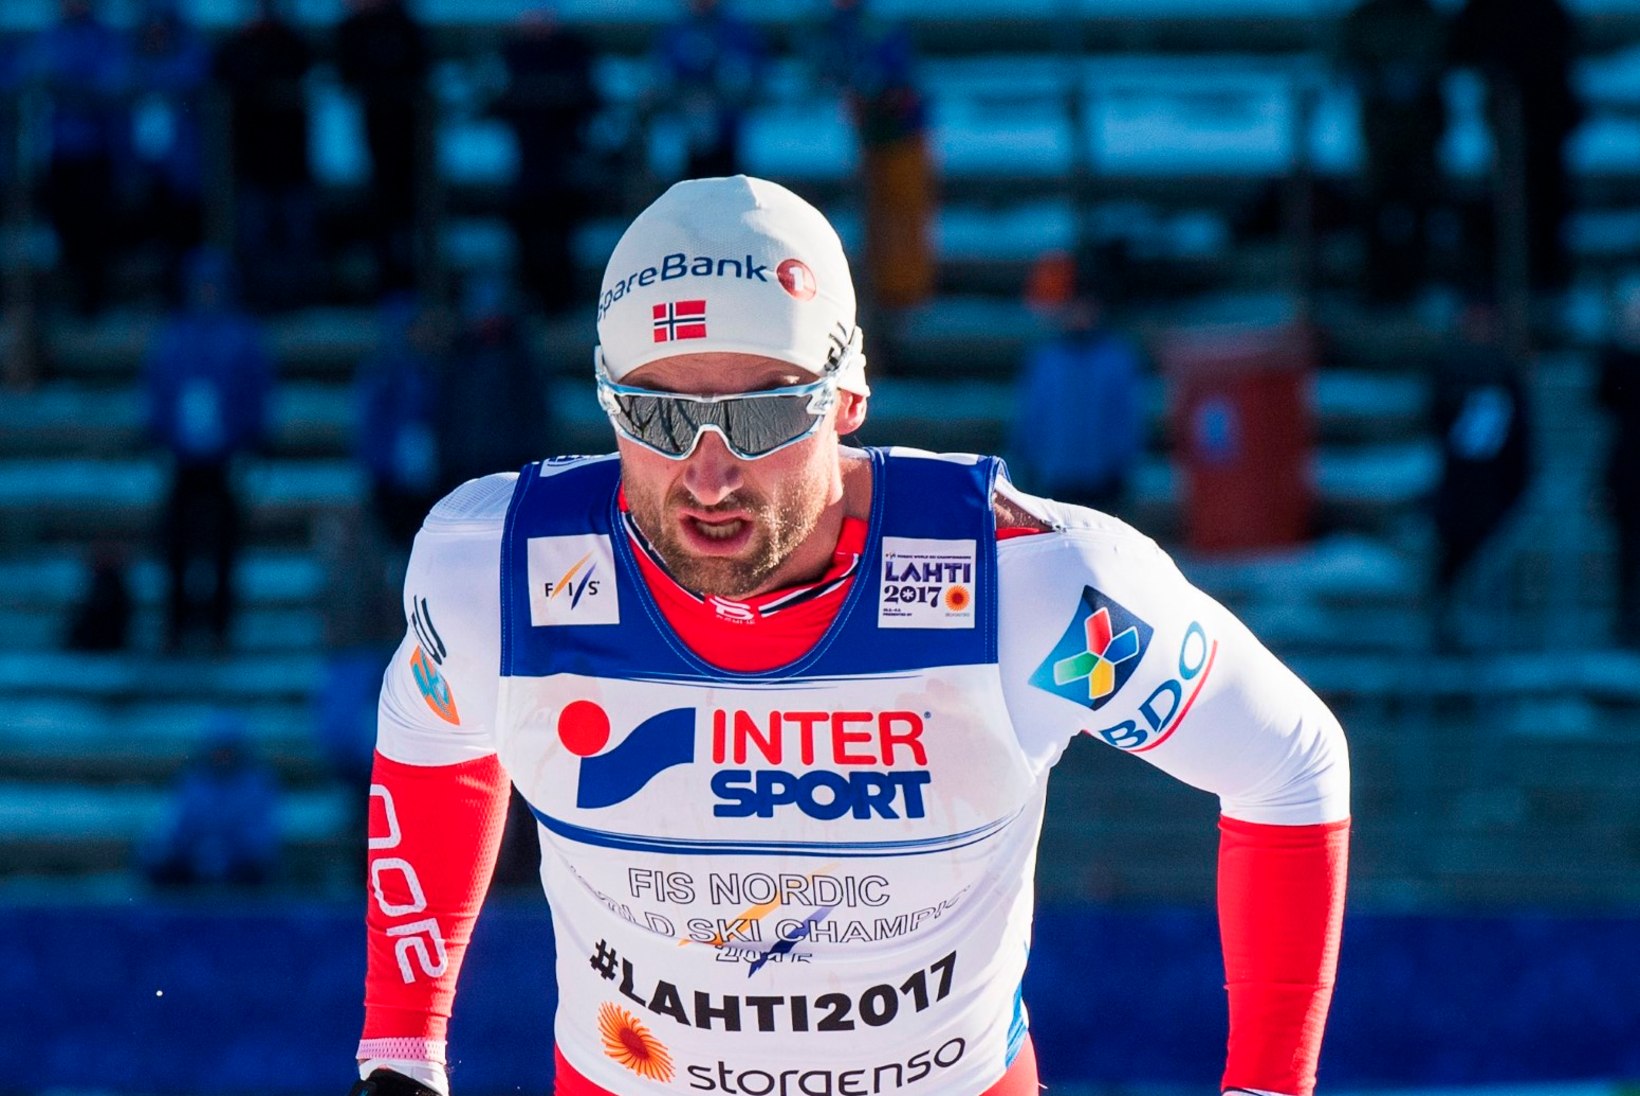 UUS TÕUS? Petter Northug purustas kodukandi võistlusel rajarekordi